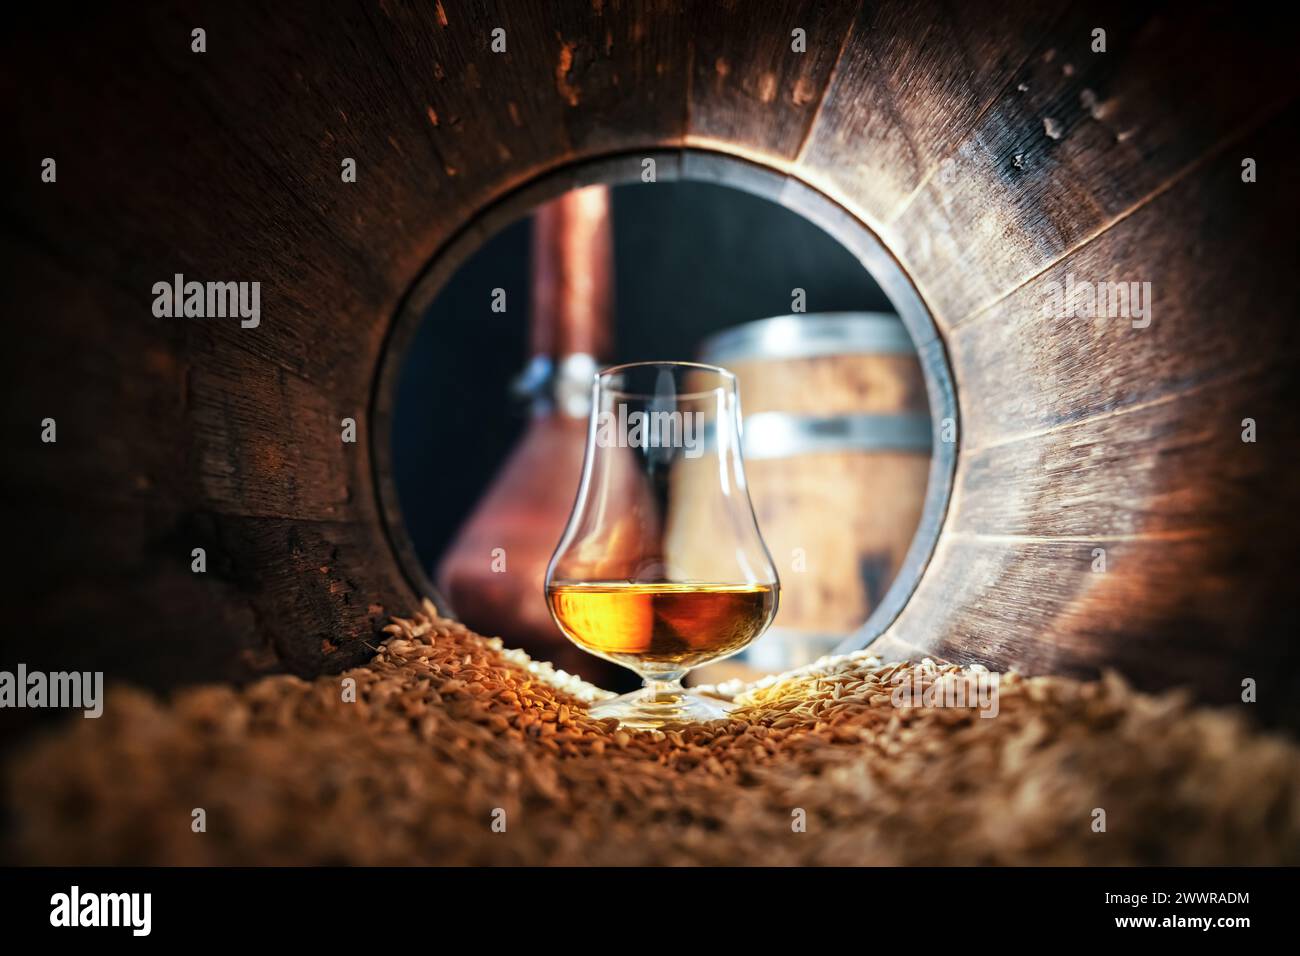 Un verre de whisky bourbon dans un vieux fût de chêne. Cuivre alambic et fût de chêne sur fond. Concept traditionnel de distillerie d'alcool Banque D'Images